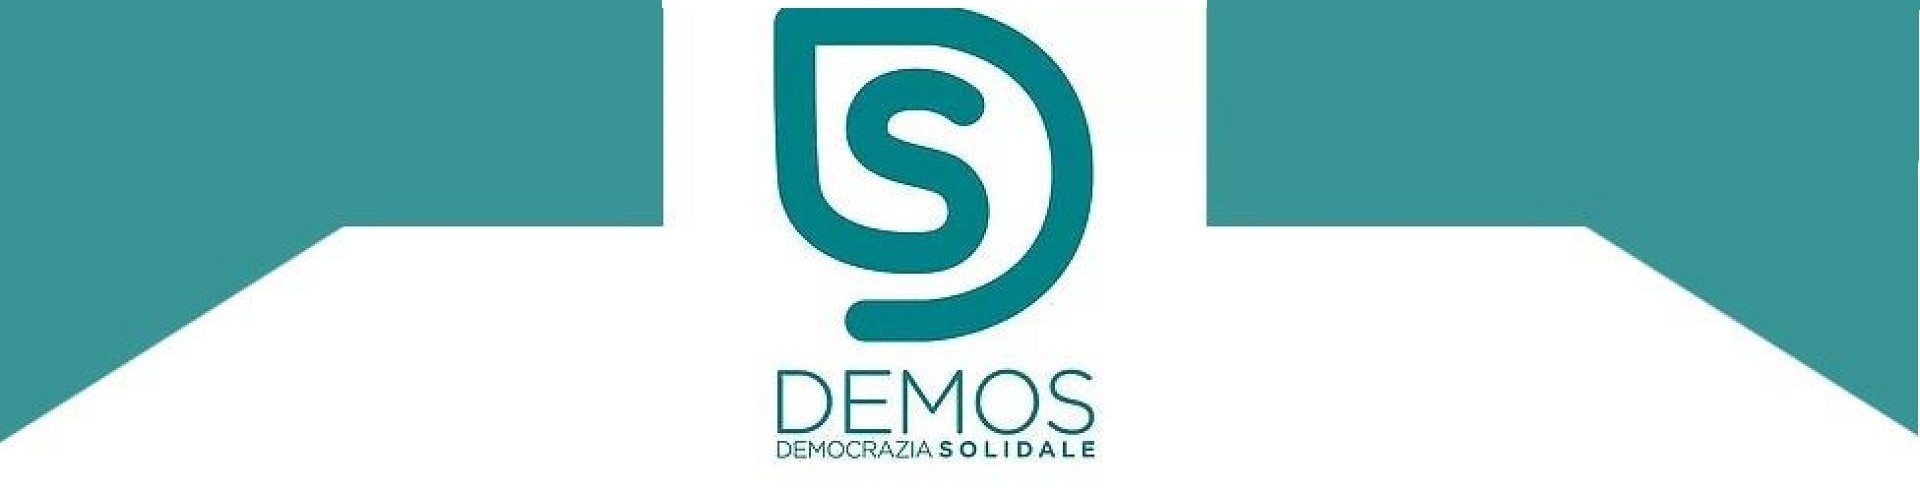 DemoS Democrazia Solidale